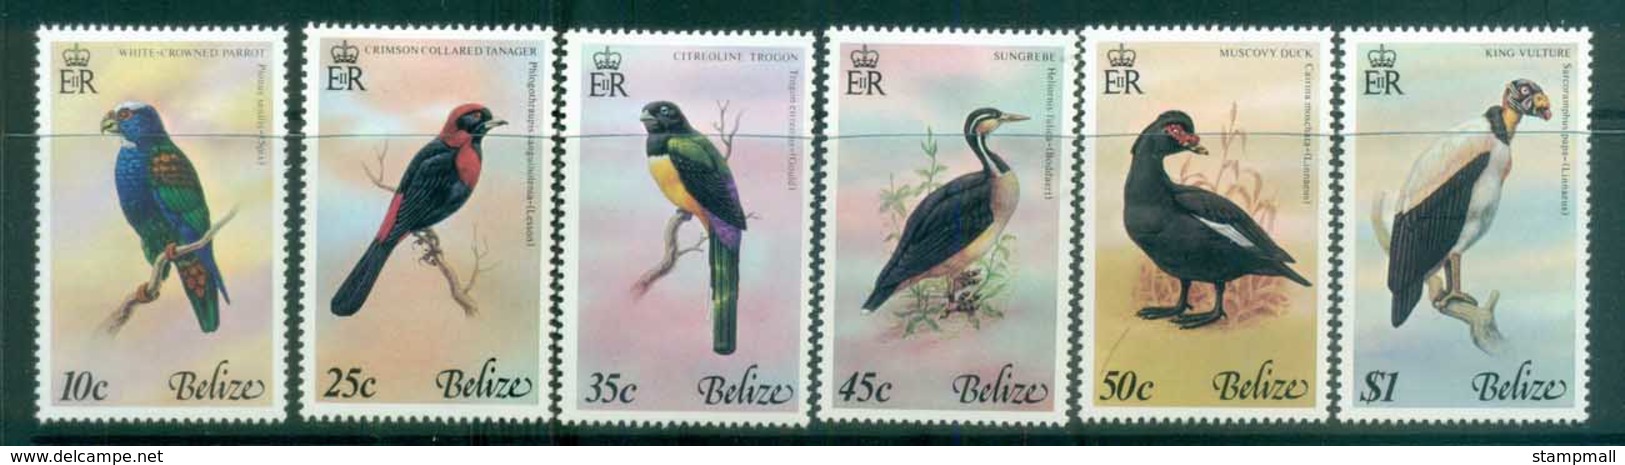 Belize 1978 Birds MLH Lot80860 - Belize (1973-...)